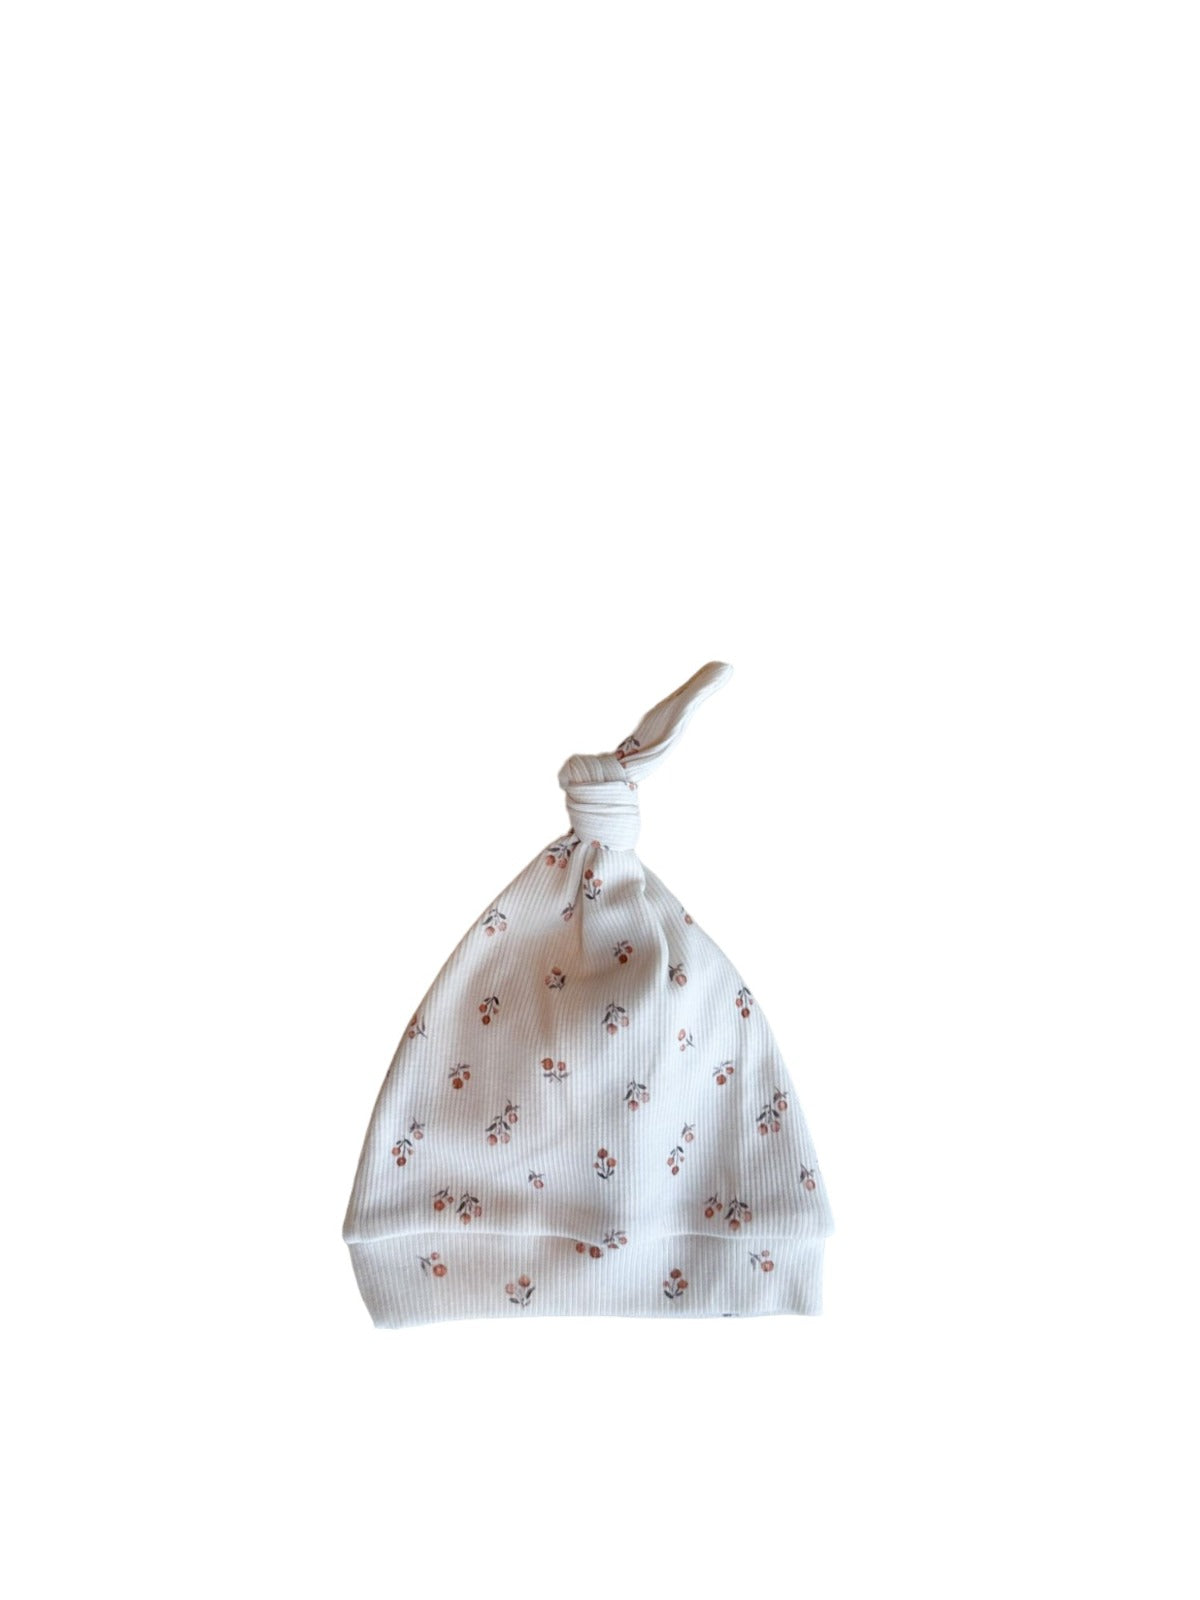 Een vredige pasgeboren baby in een schattig wit outfitje met printjes, wegdommelend met kleine handjes bij het gezichtje, lekker weggestopt op een zacht, zijdezacht dekentje met een Yumi Baby Muts Peach Blossom op het hoofdje.